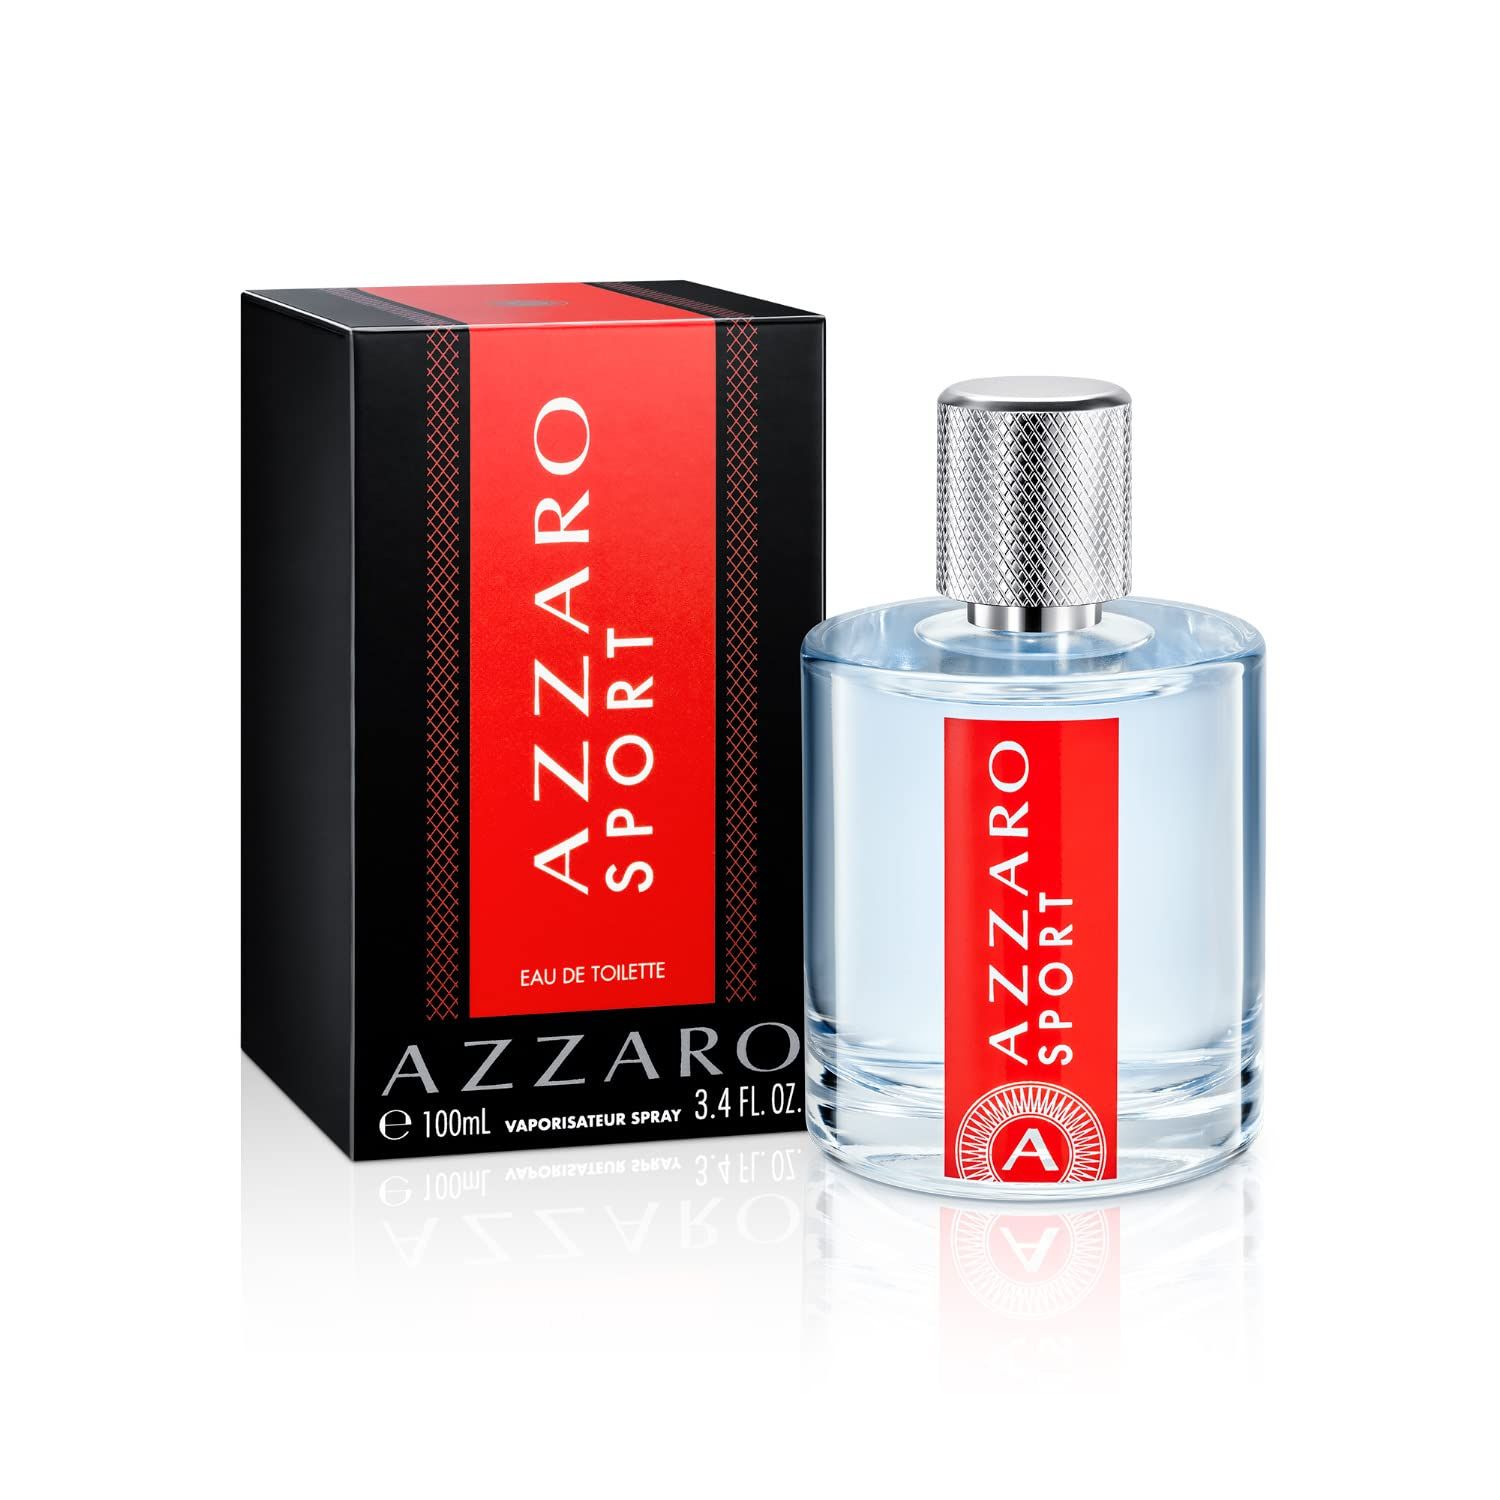 Azzaro Sport Eau de Toilette — Mens Cologne — Citrus, Aromatic & Woody Fragrance, 3.4 Fl Oz | Amazon (US)